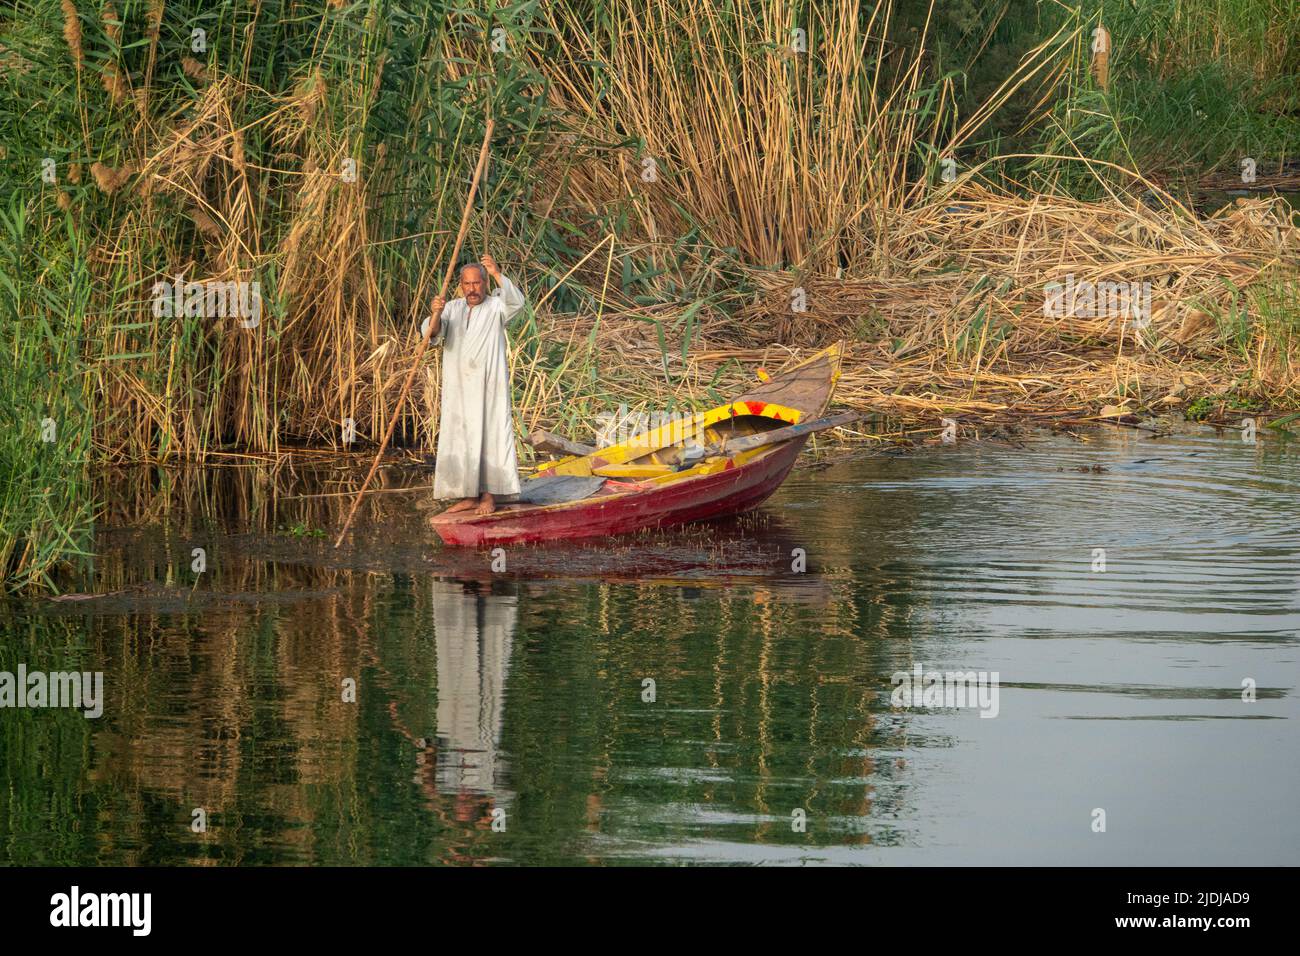 Un solitario pescador del Nilo sosteniendo un palo largo en un barco de pesca de madera de colores brillantes en un pequeño arroyo con agua suavemente ondulada y reflejos Foto de stock